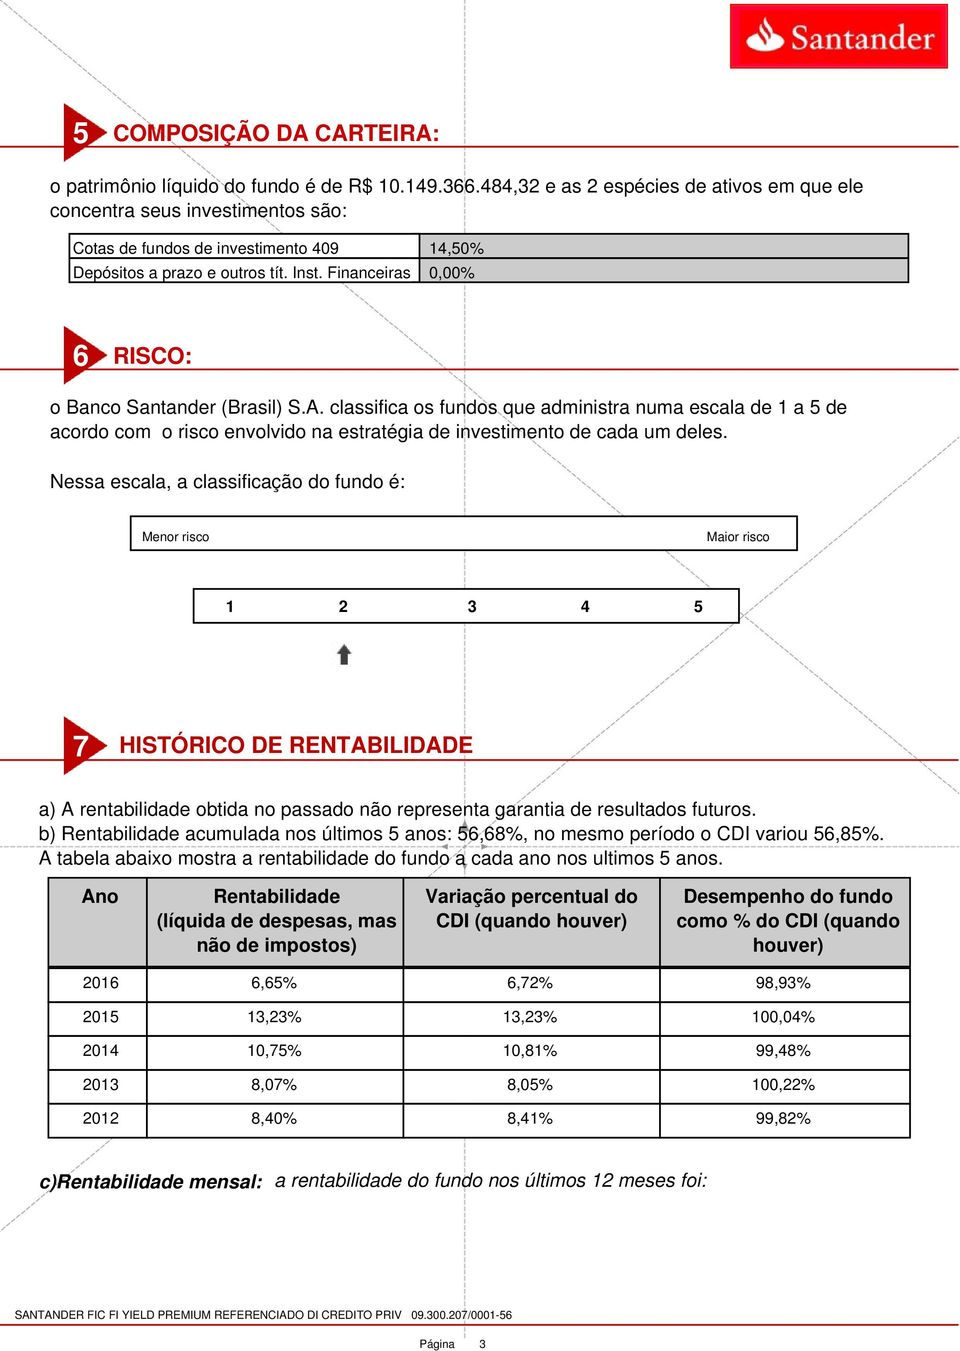 Financeiras 0,00% 6 RISCO: o Banco Santander (Brasil) S.A. classifica os fundos que administra numa escala de 1 a 5 de acordo com o risco envolvido na estratégia de investimento de cada um deles.